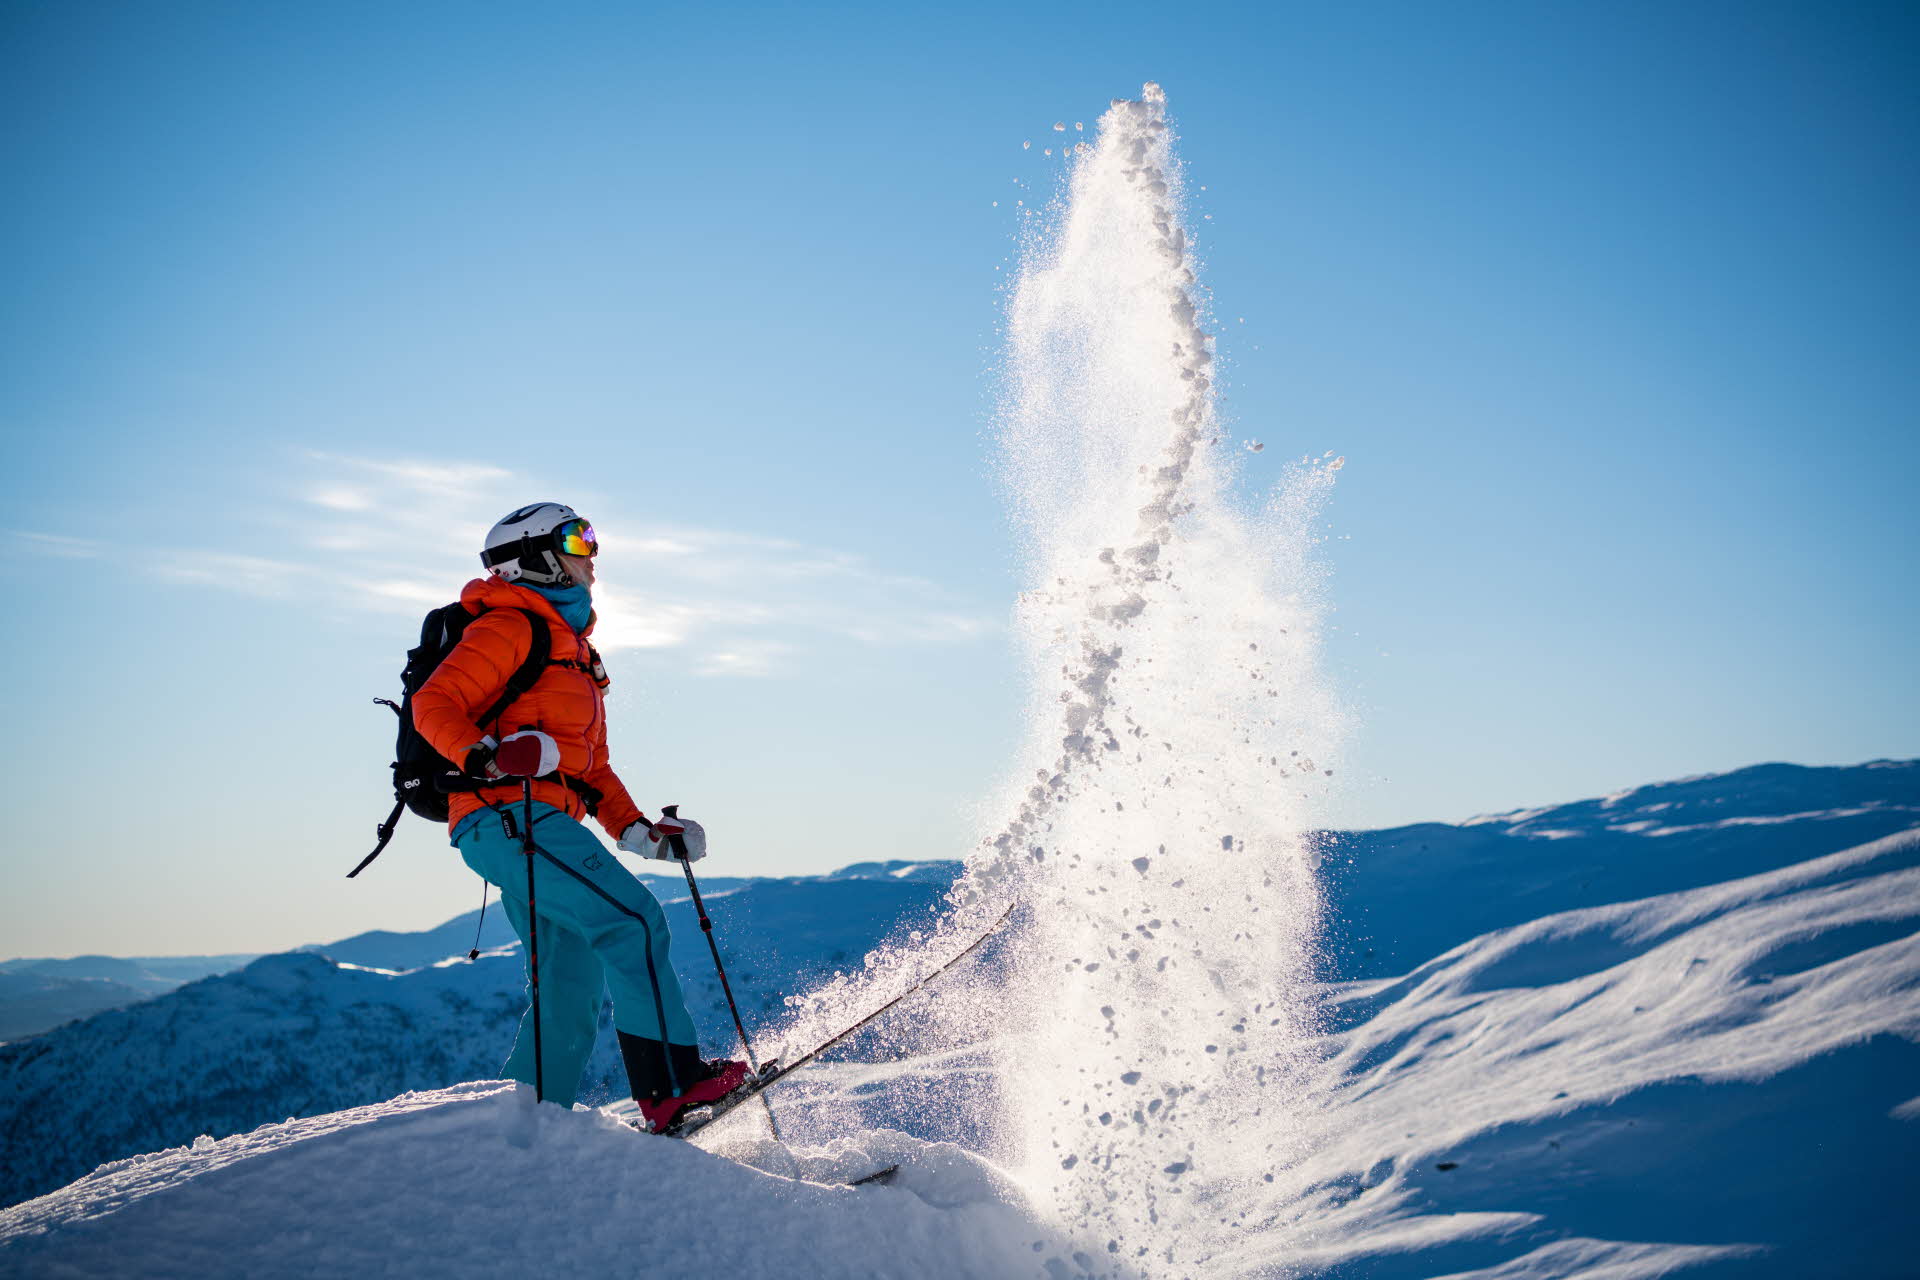 雪山环绕下，一个戴着头盔、穿着红色夹克和蓝色裤子的人用滑雪板将积雪扬起。 